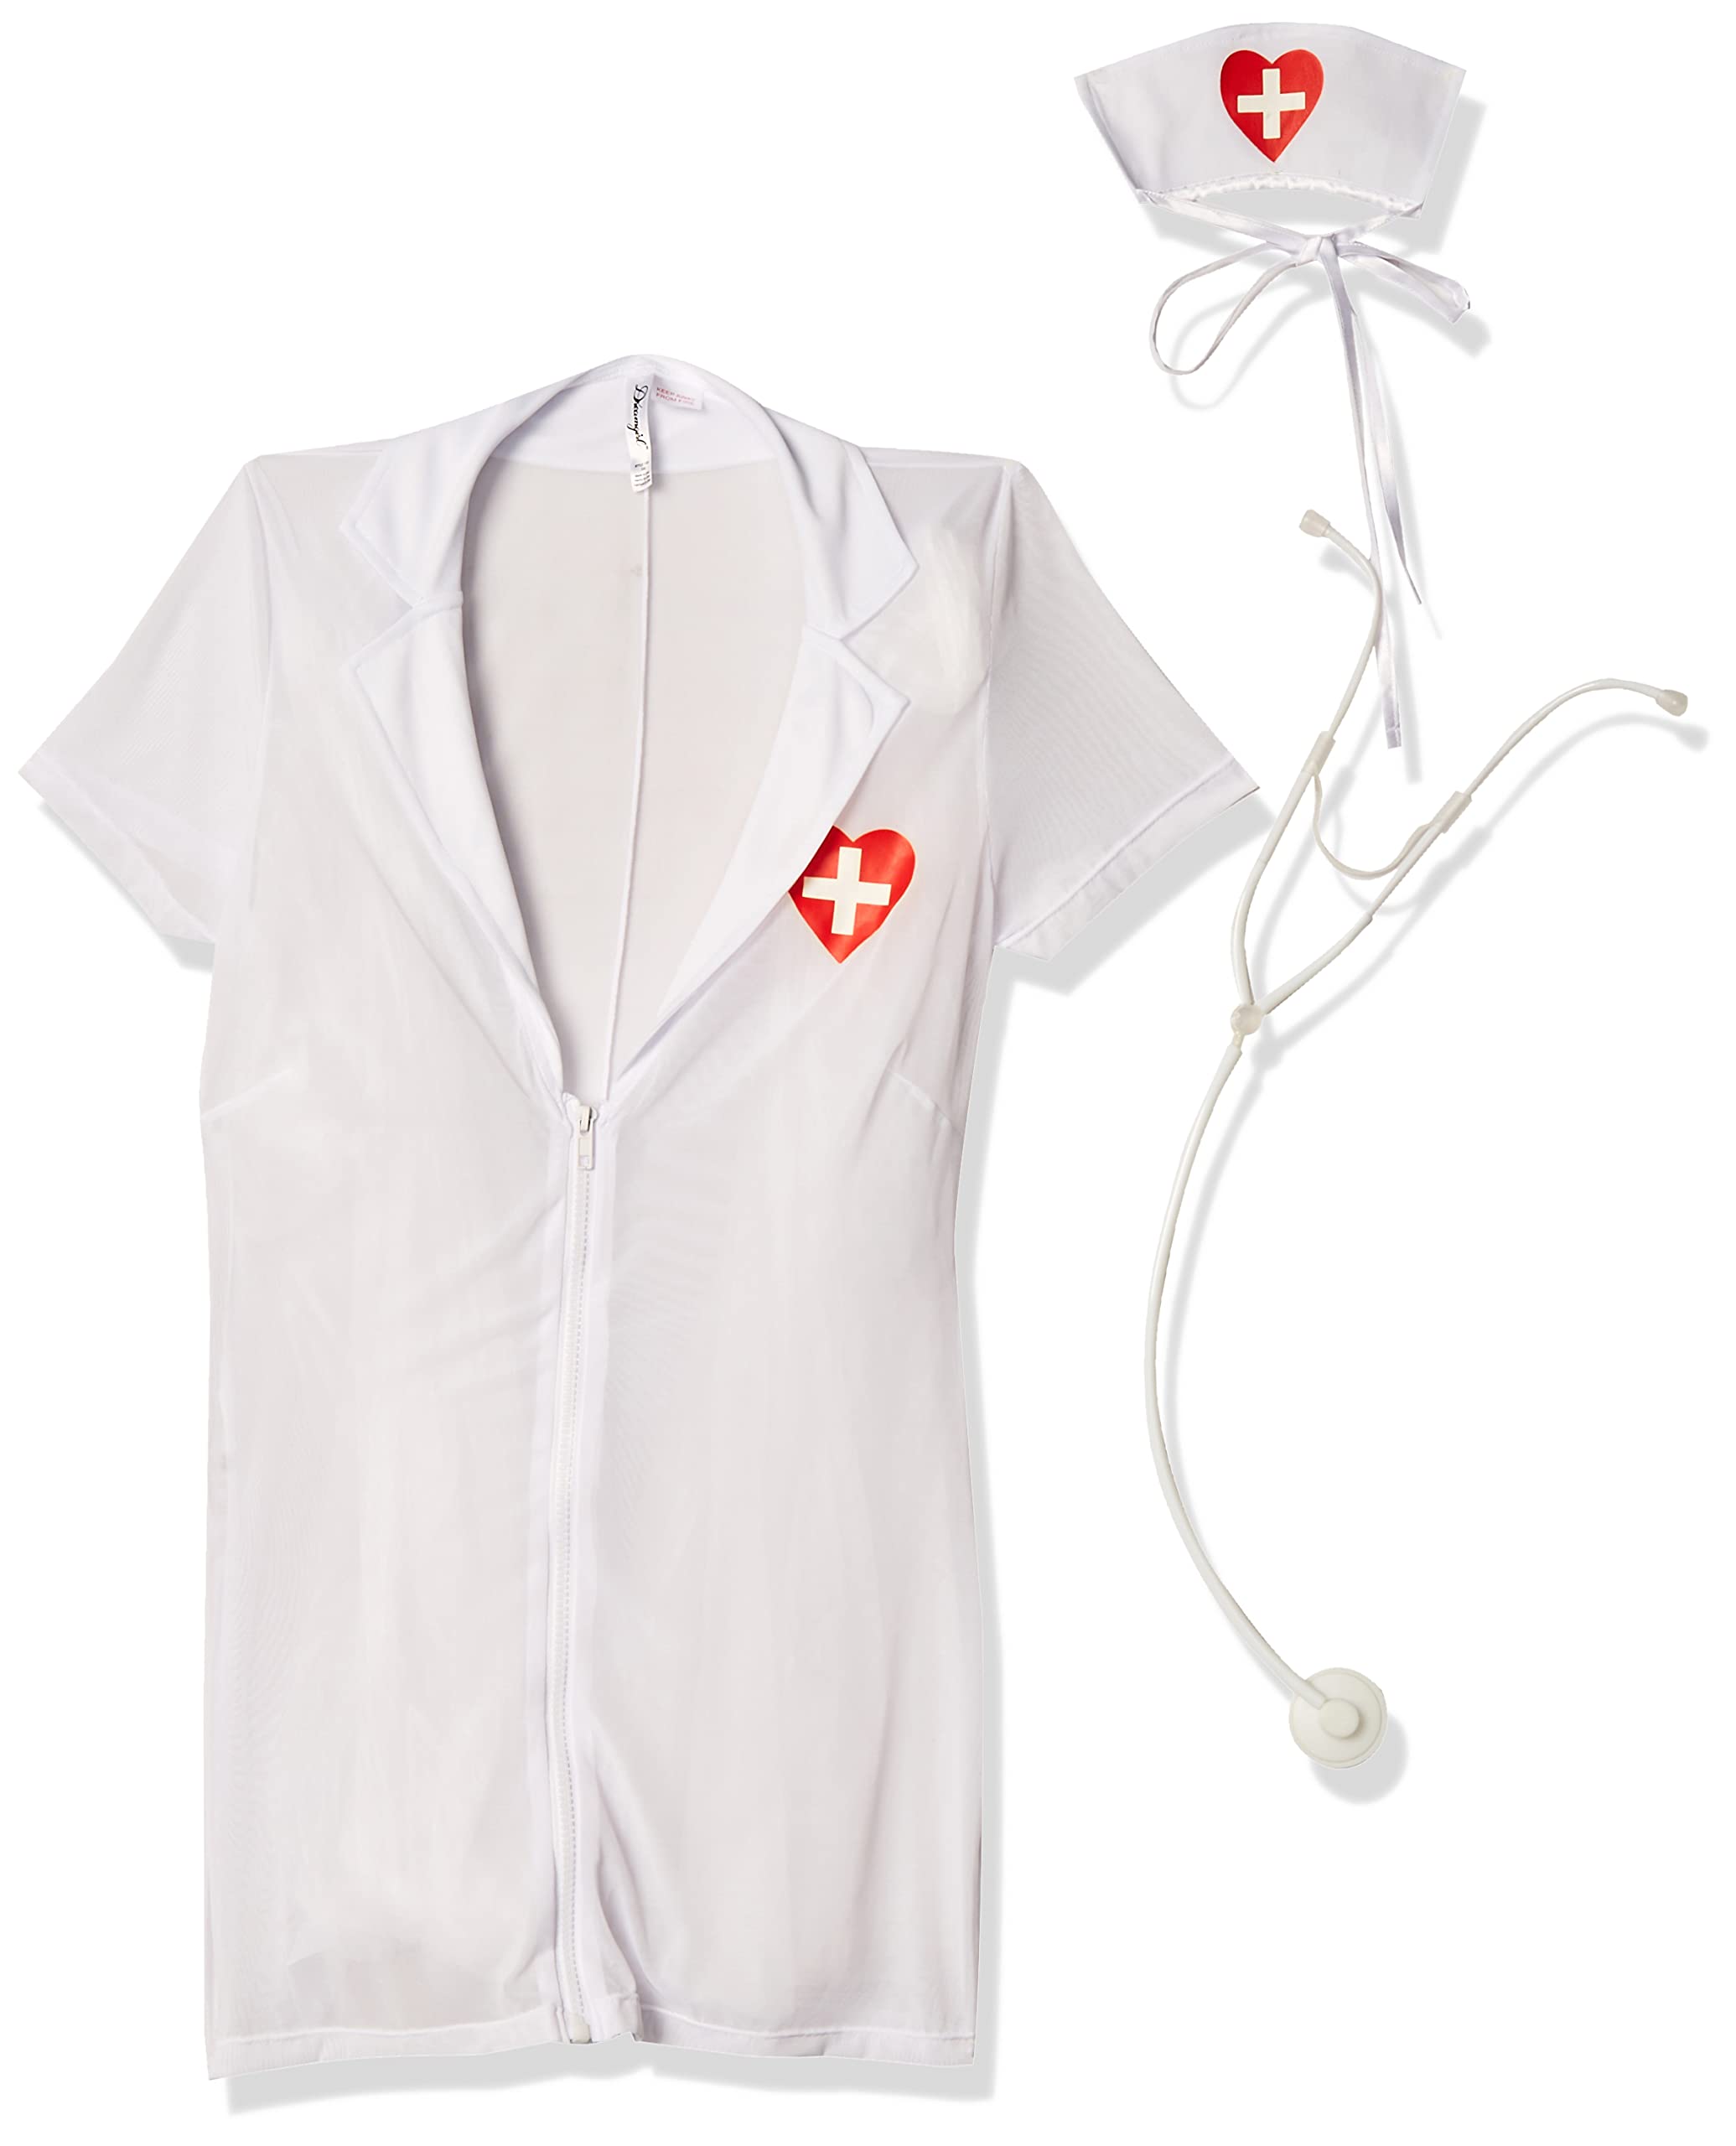 Dreamgirl Women's White Mesh ER Hottie Nurse Costume